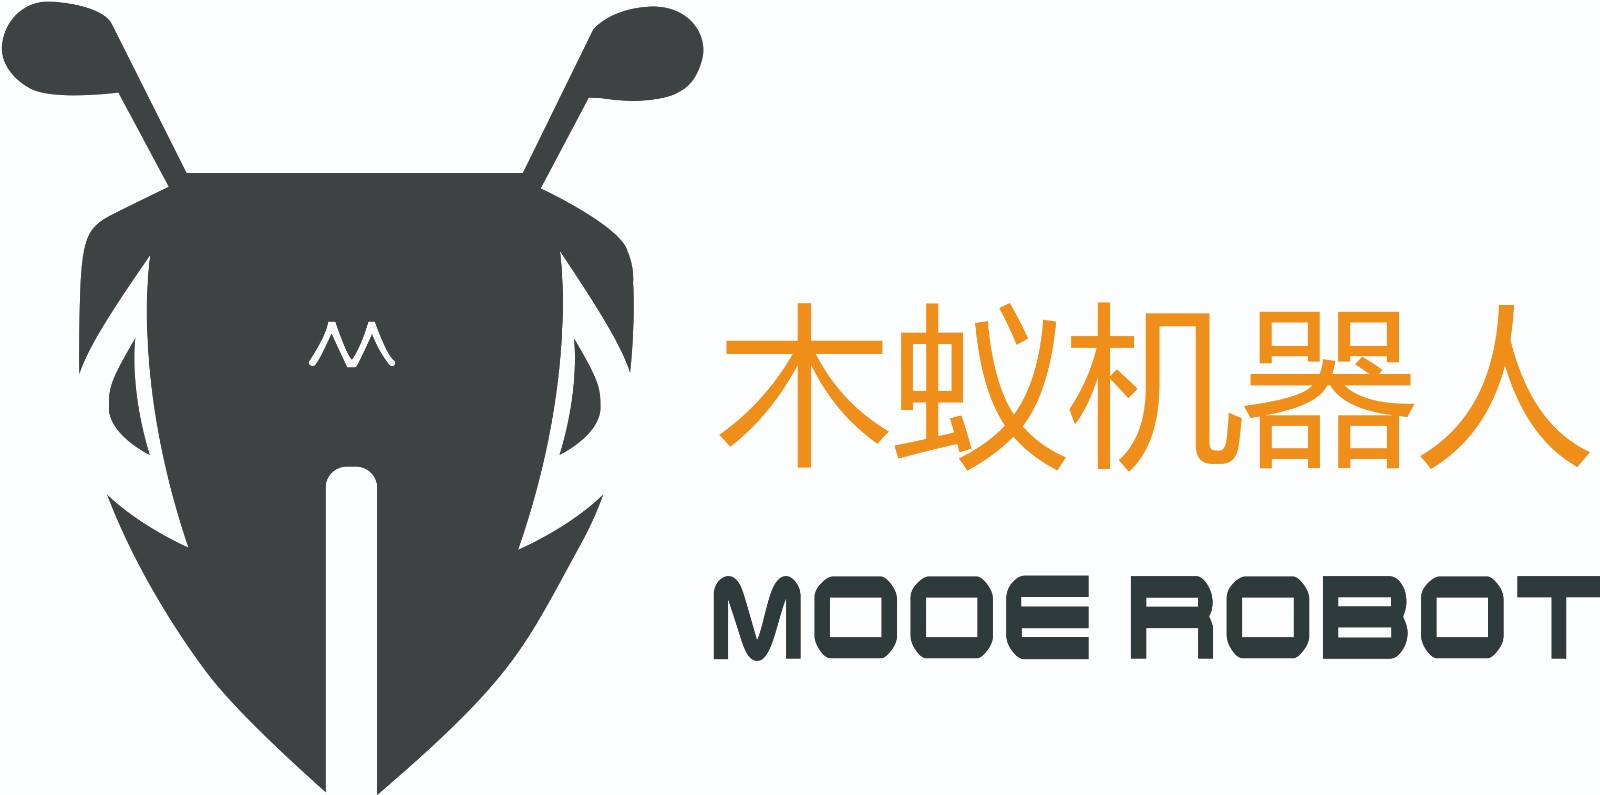 木蚁机器人参评“维科杯·OFweek 2022中国机器人行业年度品牌影响力领军企业奖”